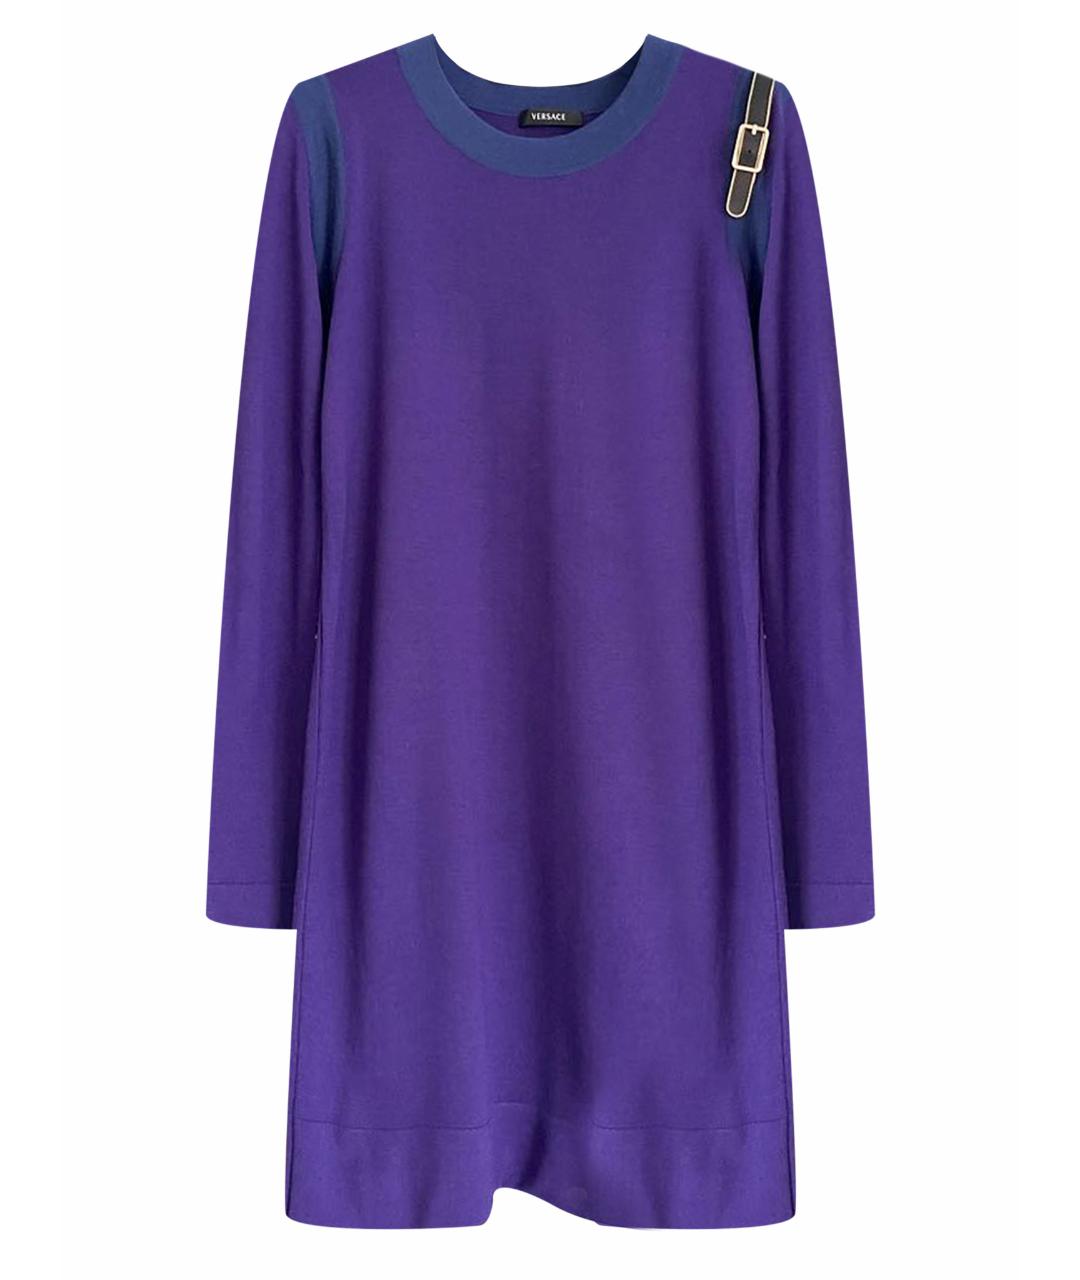 VERSACE Фиолетовый шерстяной джемпер / свитер, фото 1